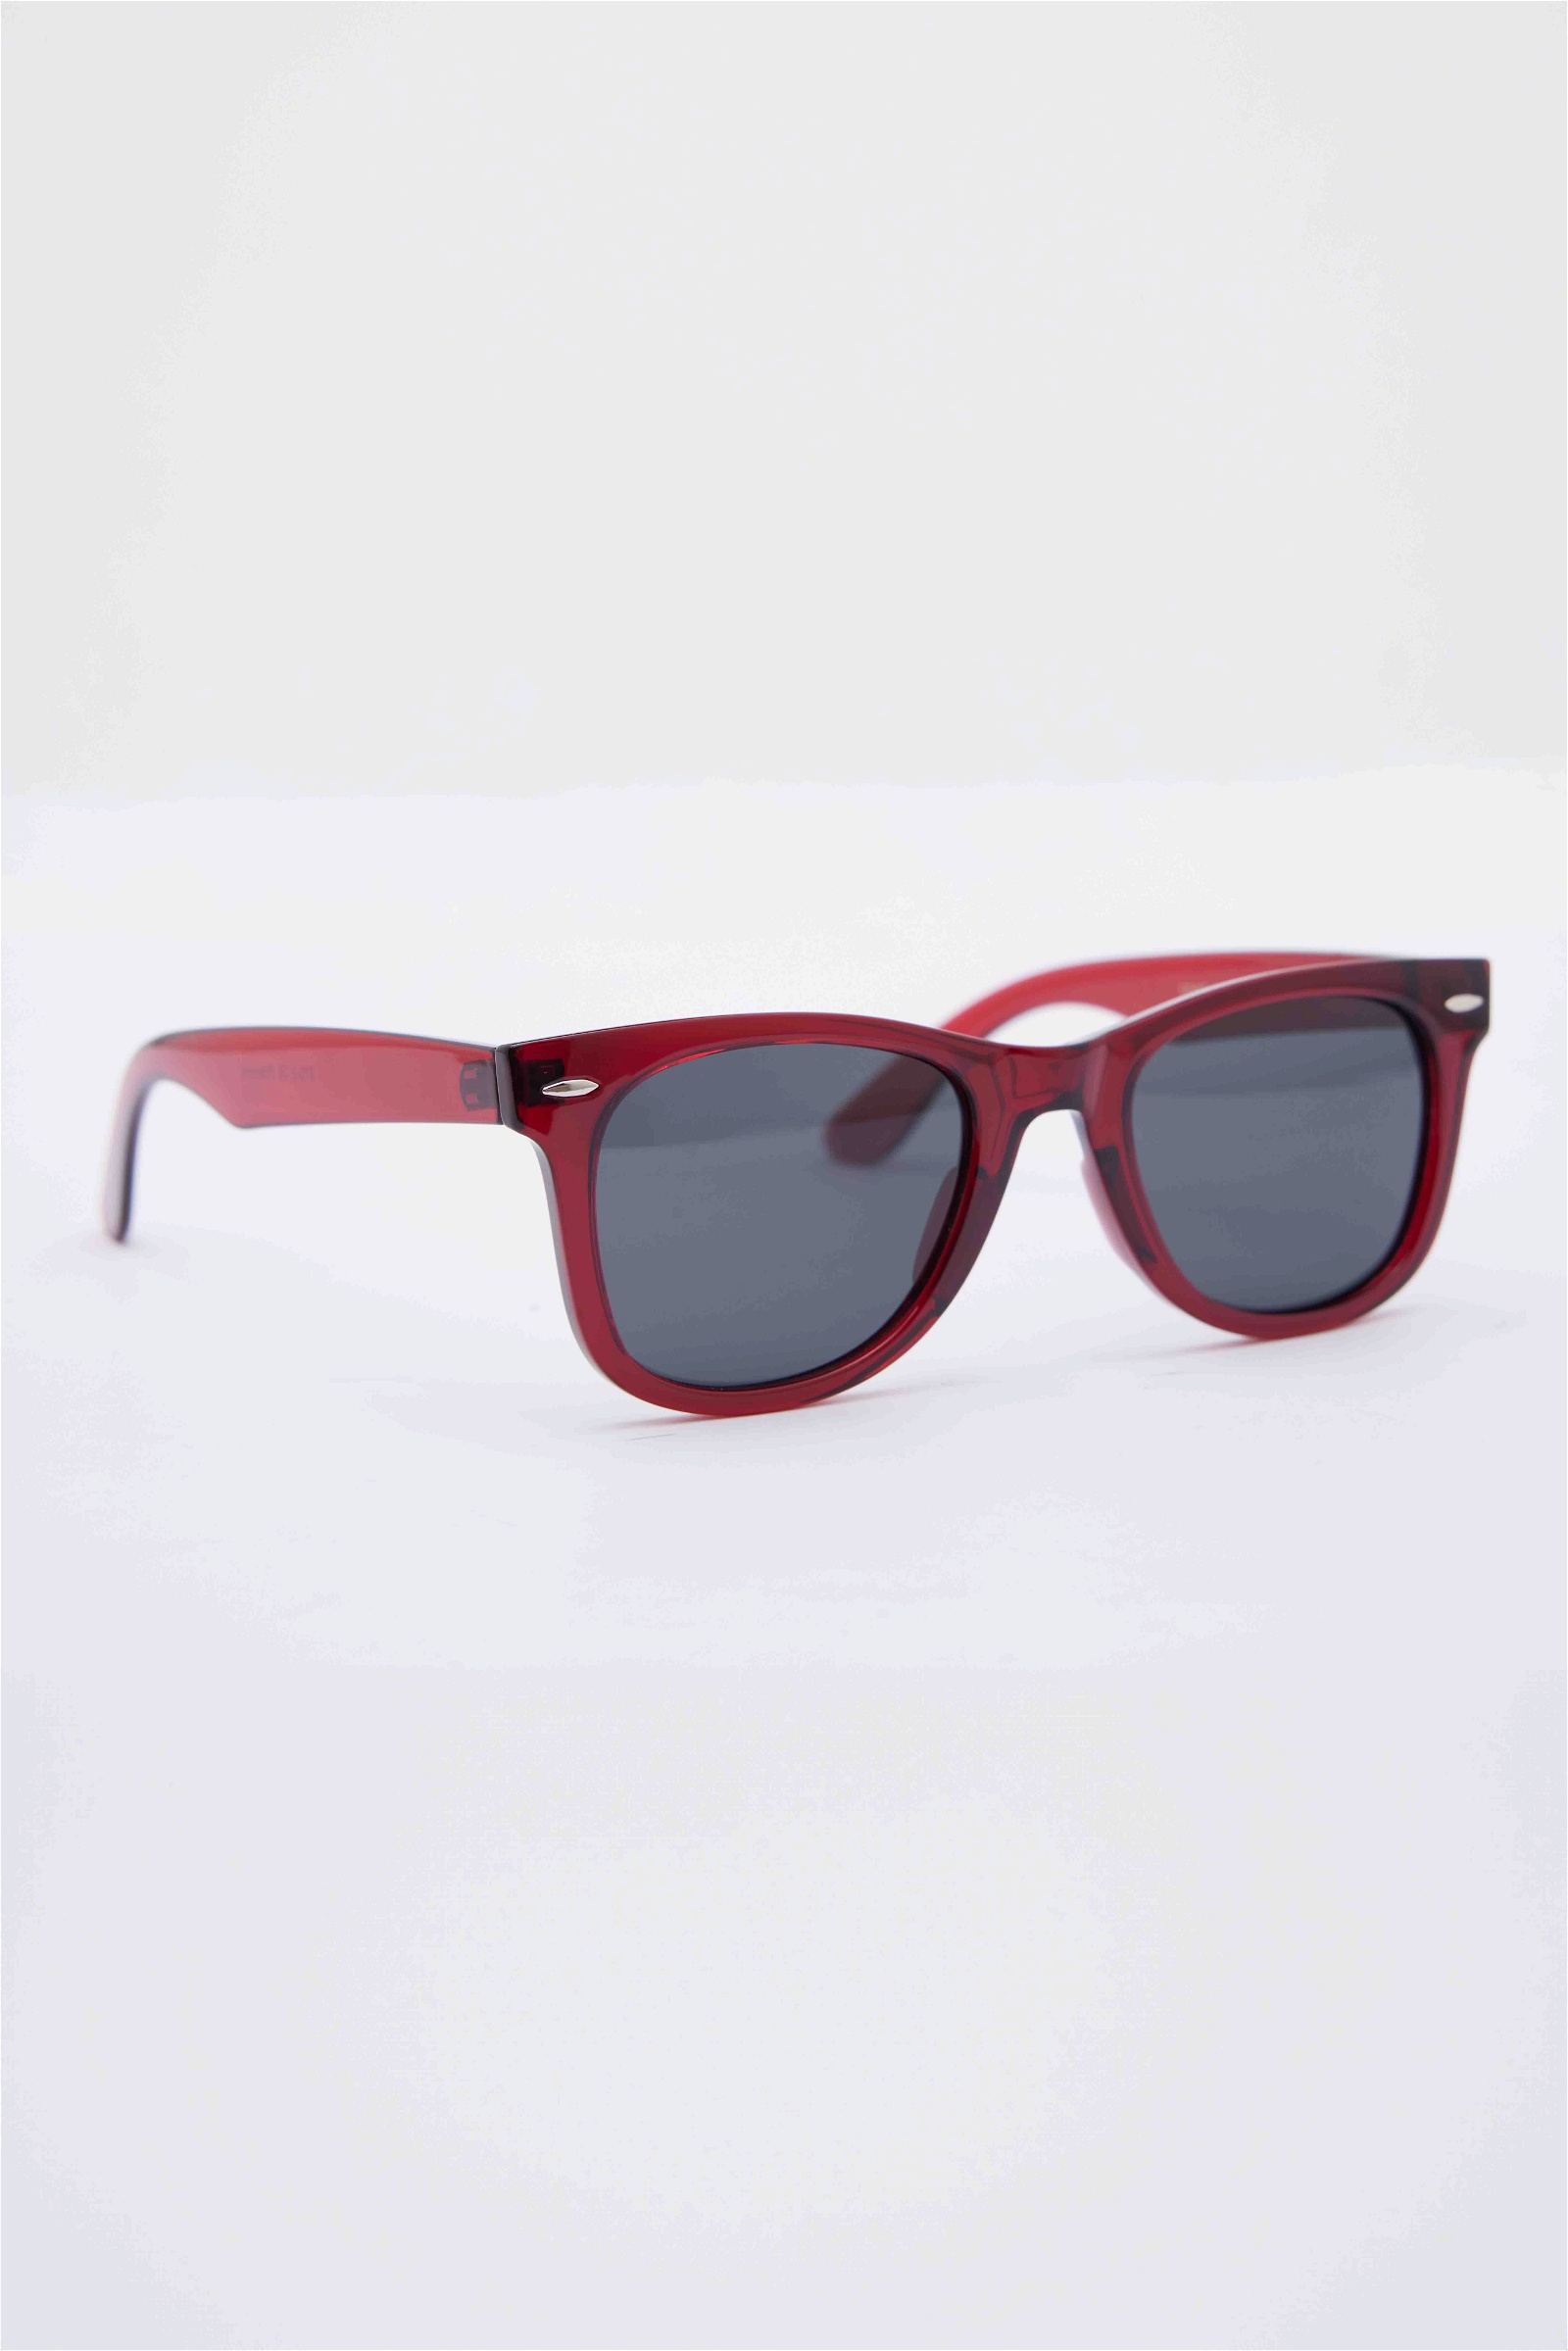 Plain Claret Red Sunglasses